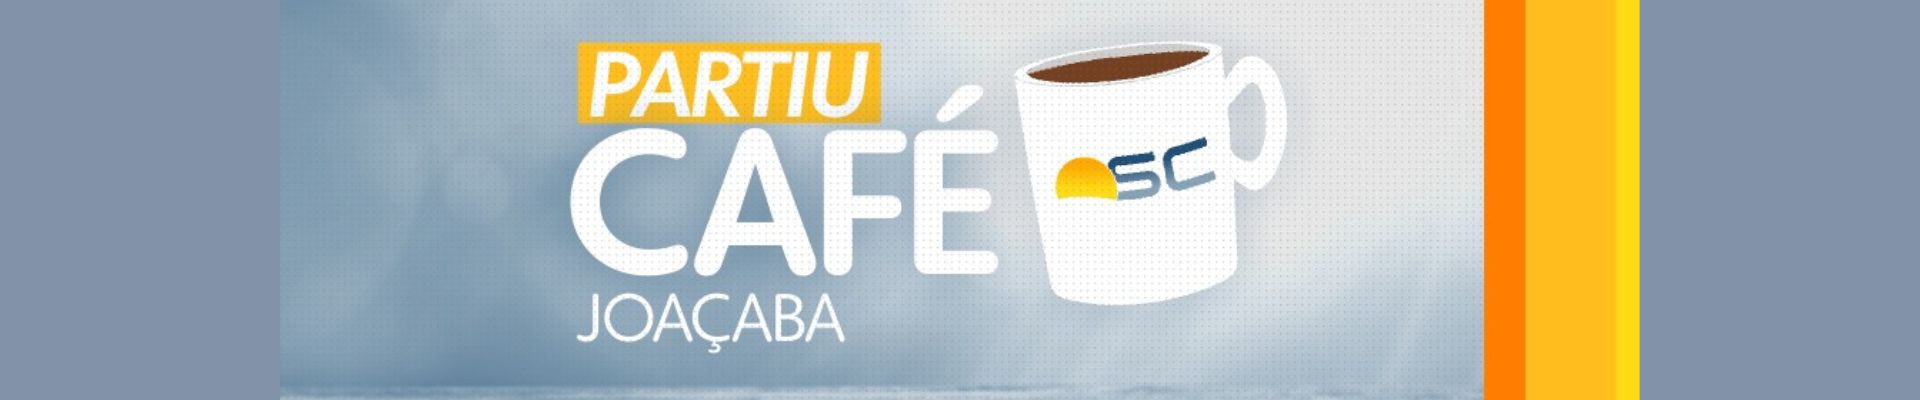 Bom Dia Santa Catarina realiza “Partiu Café” especial em Joaçaba